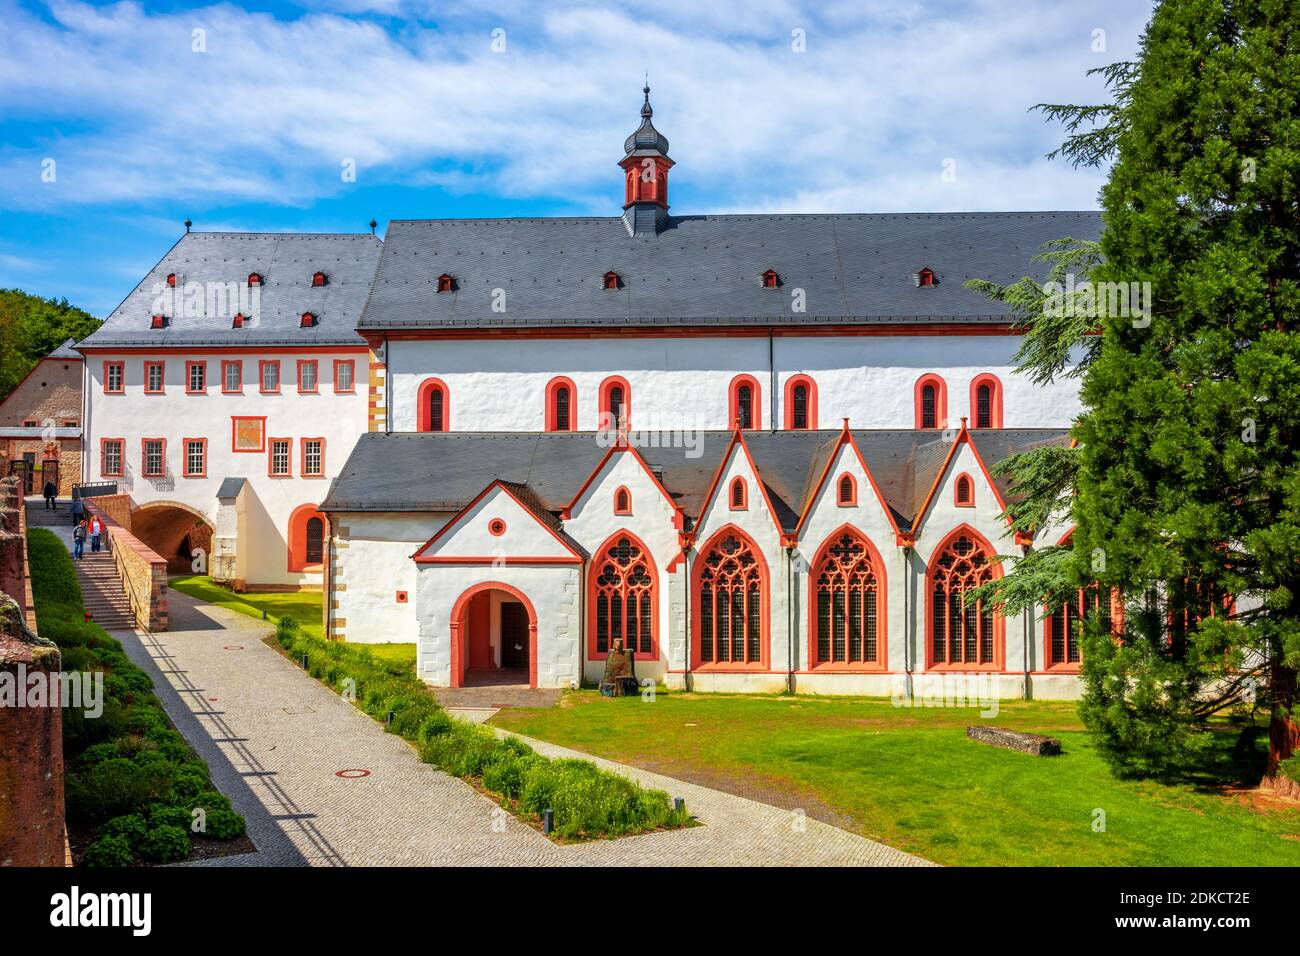 Abbey Eberbach in Eltville am Rhein, Germany Stock Photo